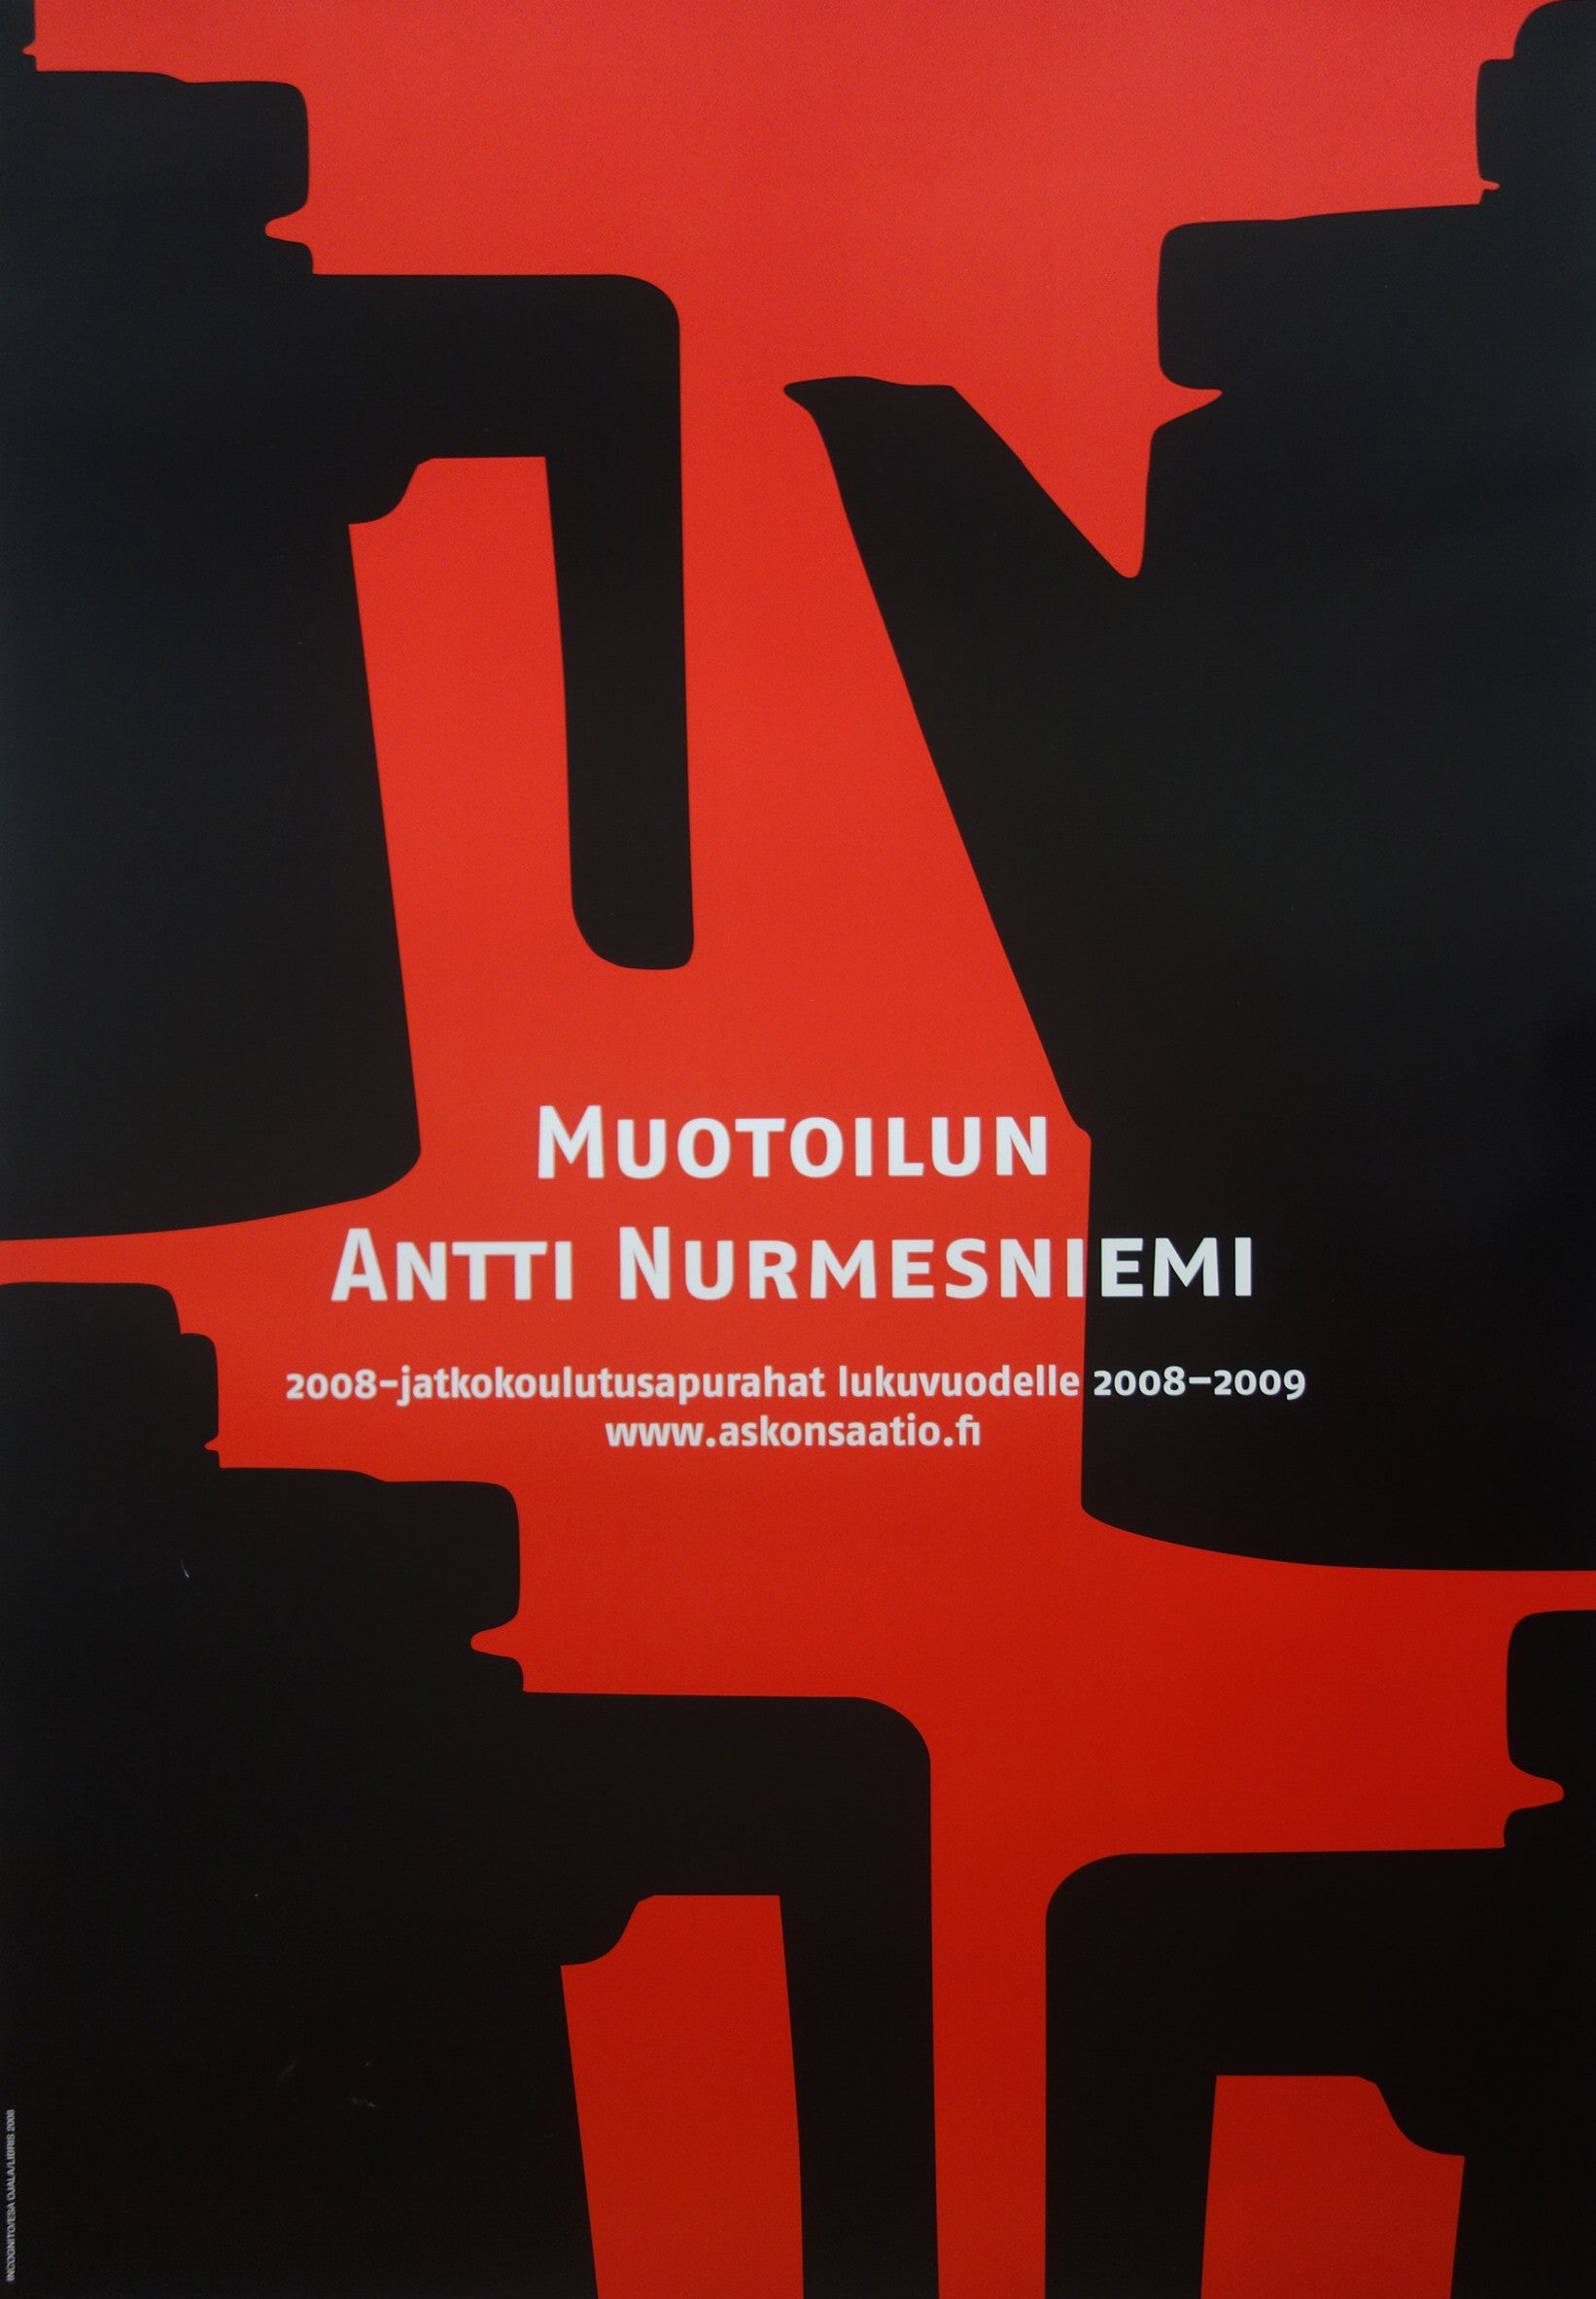 Antti Nurmesniemi Design Scholarship